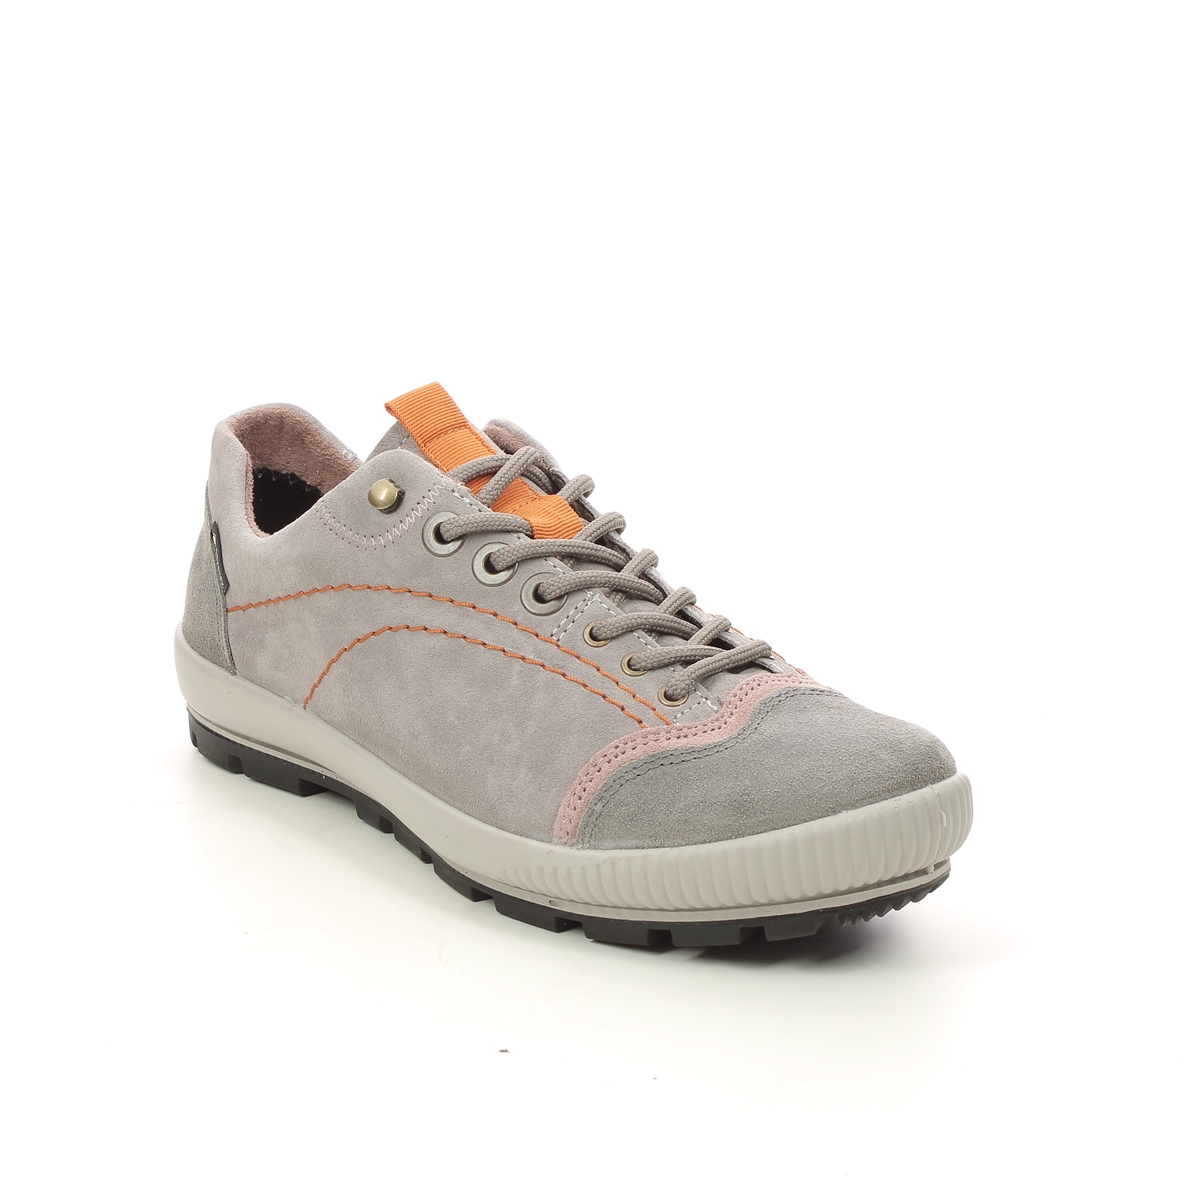 Legero Tanaro Trek Gtx Light Grey Suede Womens Walking Shoes 2000122-2900 In Size 7 In Plain Light Grey Suede